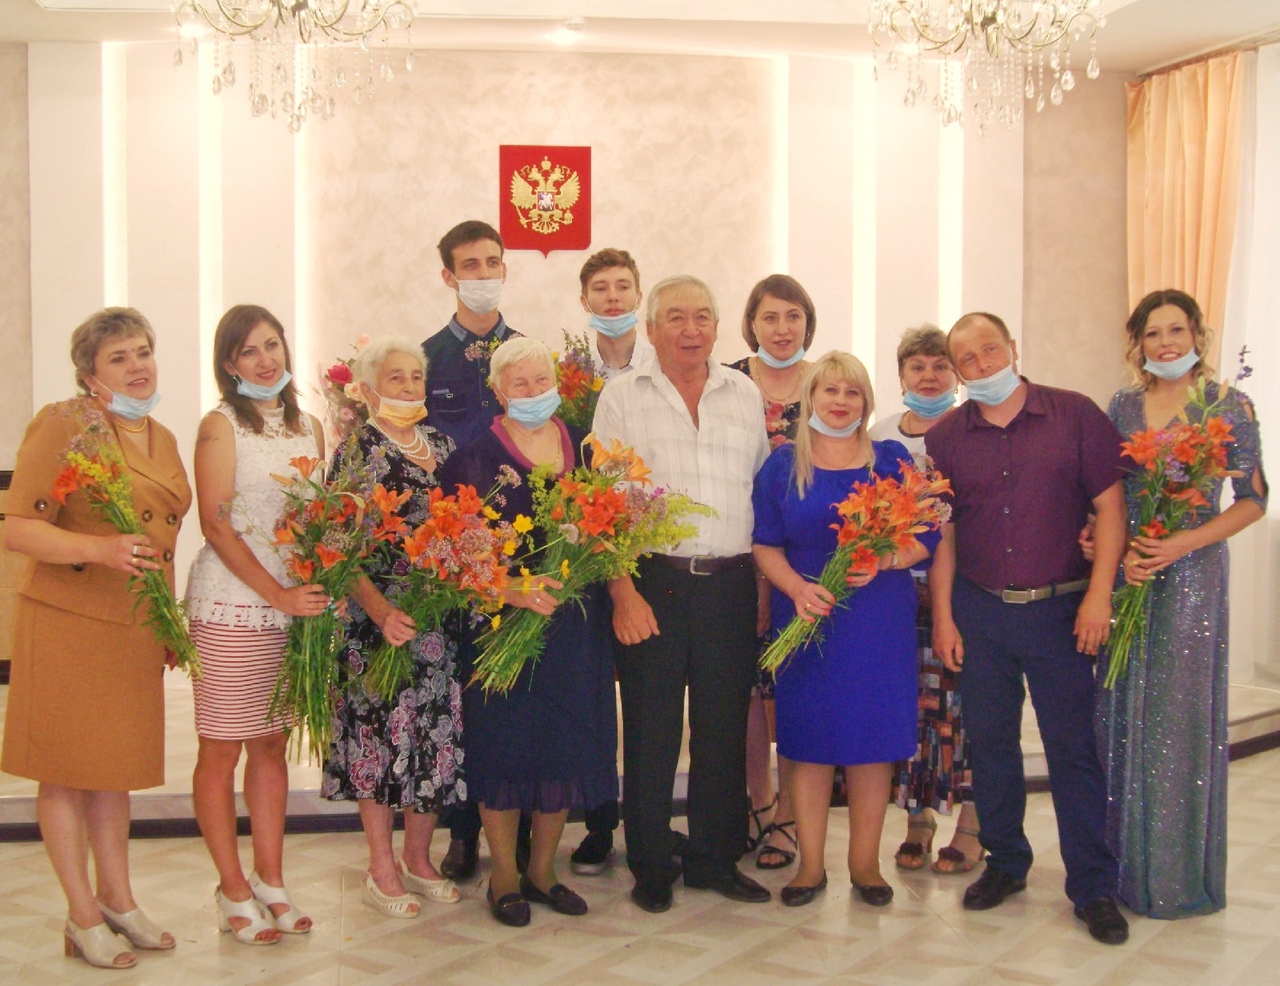 Забайкальская семья, прожившая в браке 57 лет, получила медаль «За любовь и верность»